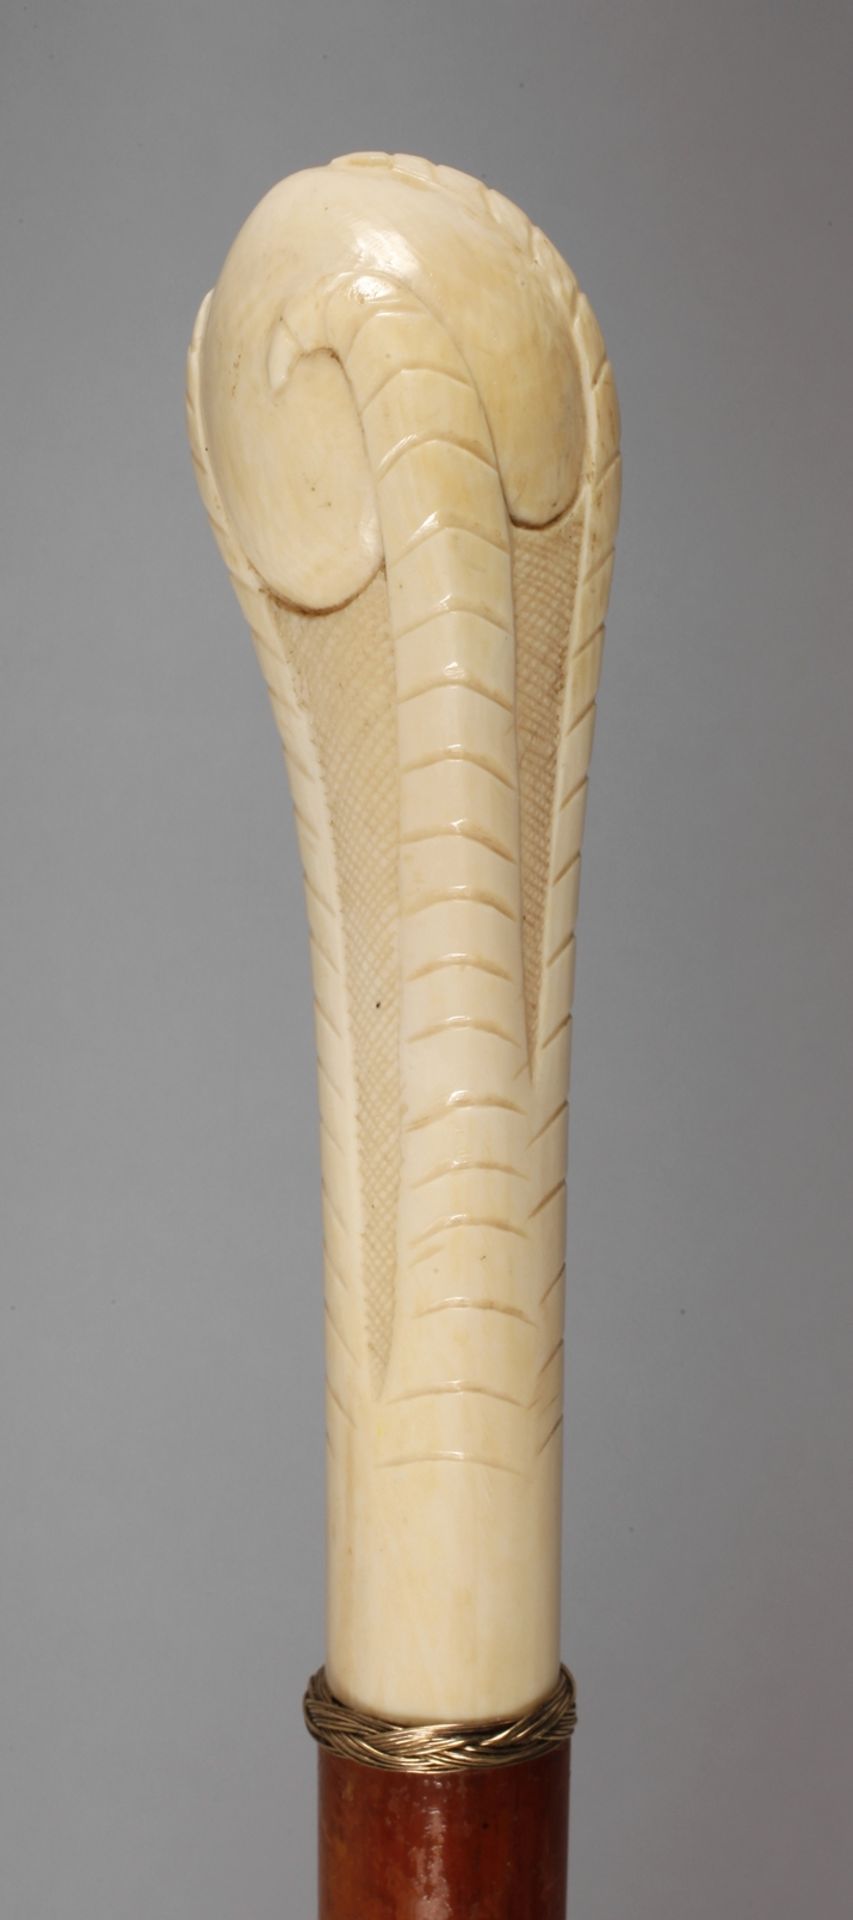 Spazierstock Elfenbein um 1900, hoher Knauf aus Elfenbein, aufwendig beschnitzt in Form einer